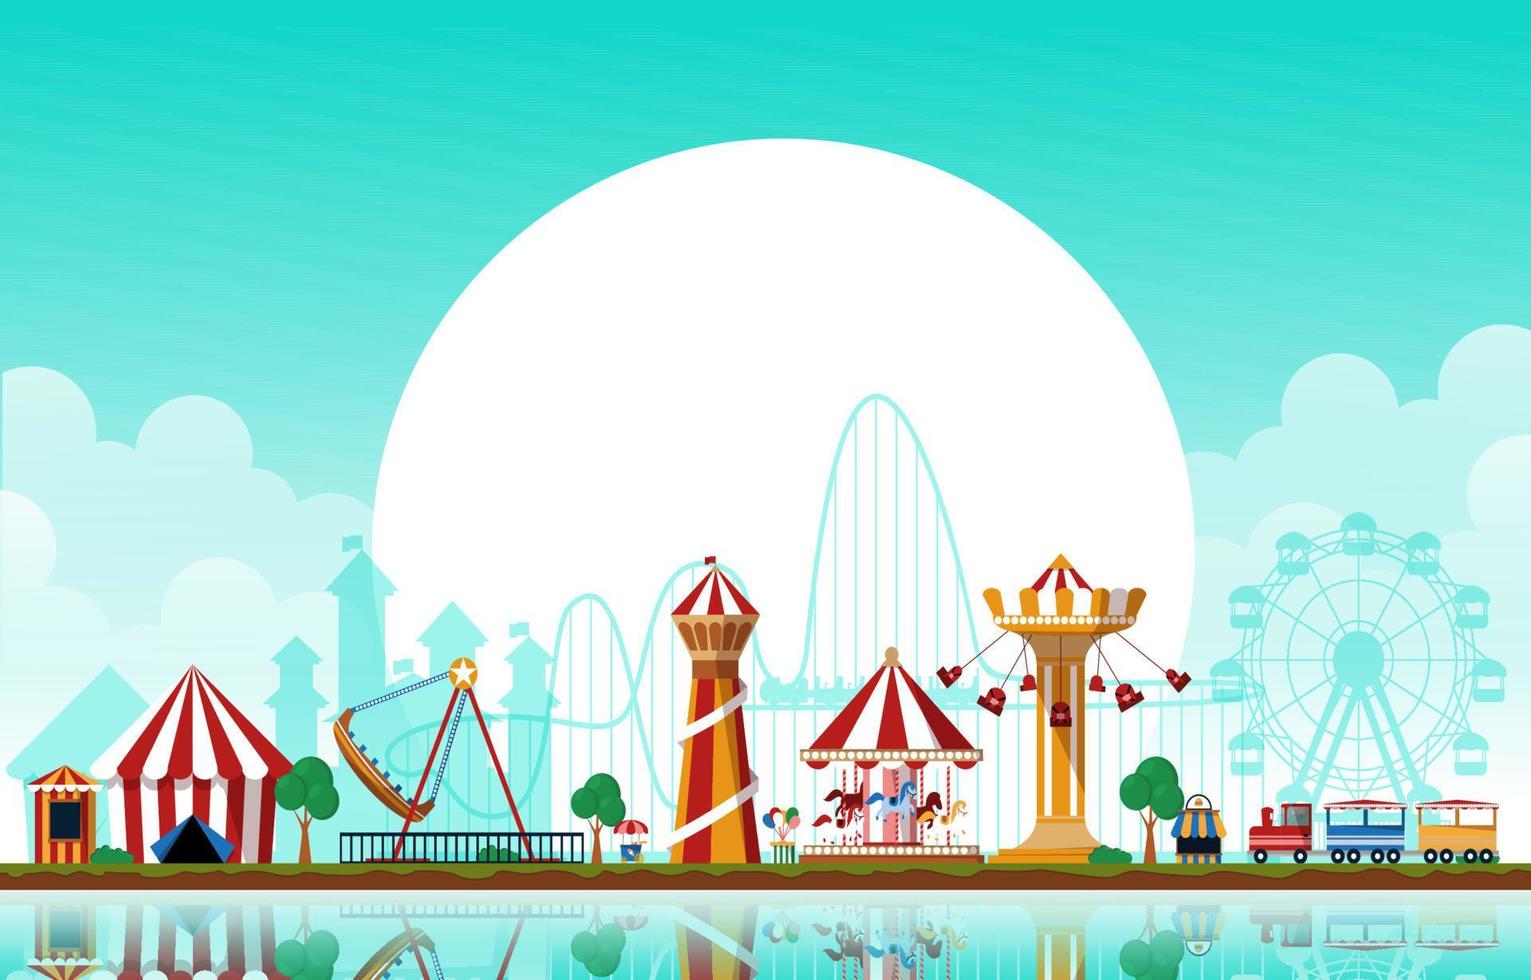 Sun amusement park fête foraine carnaval télévision vector illustration